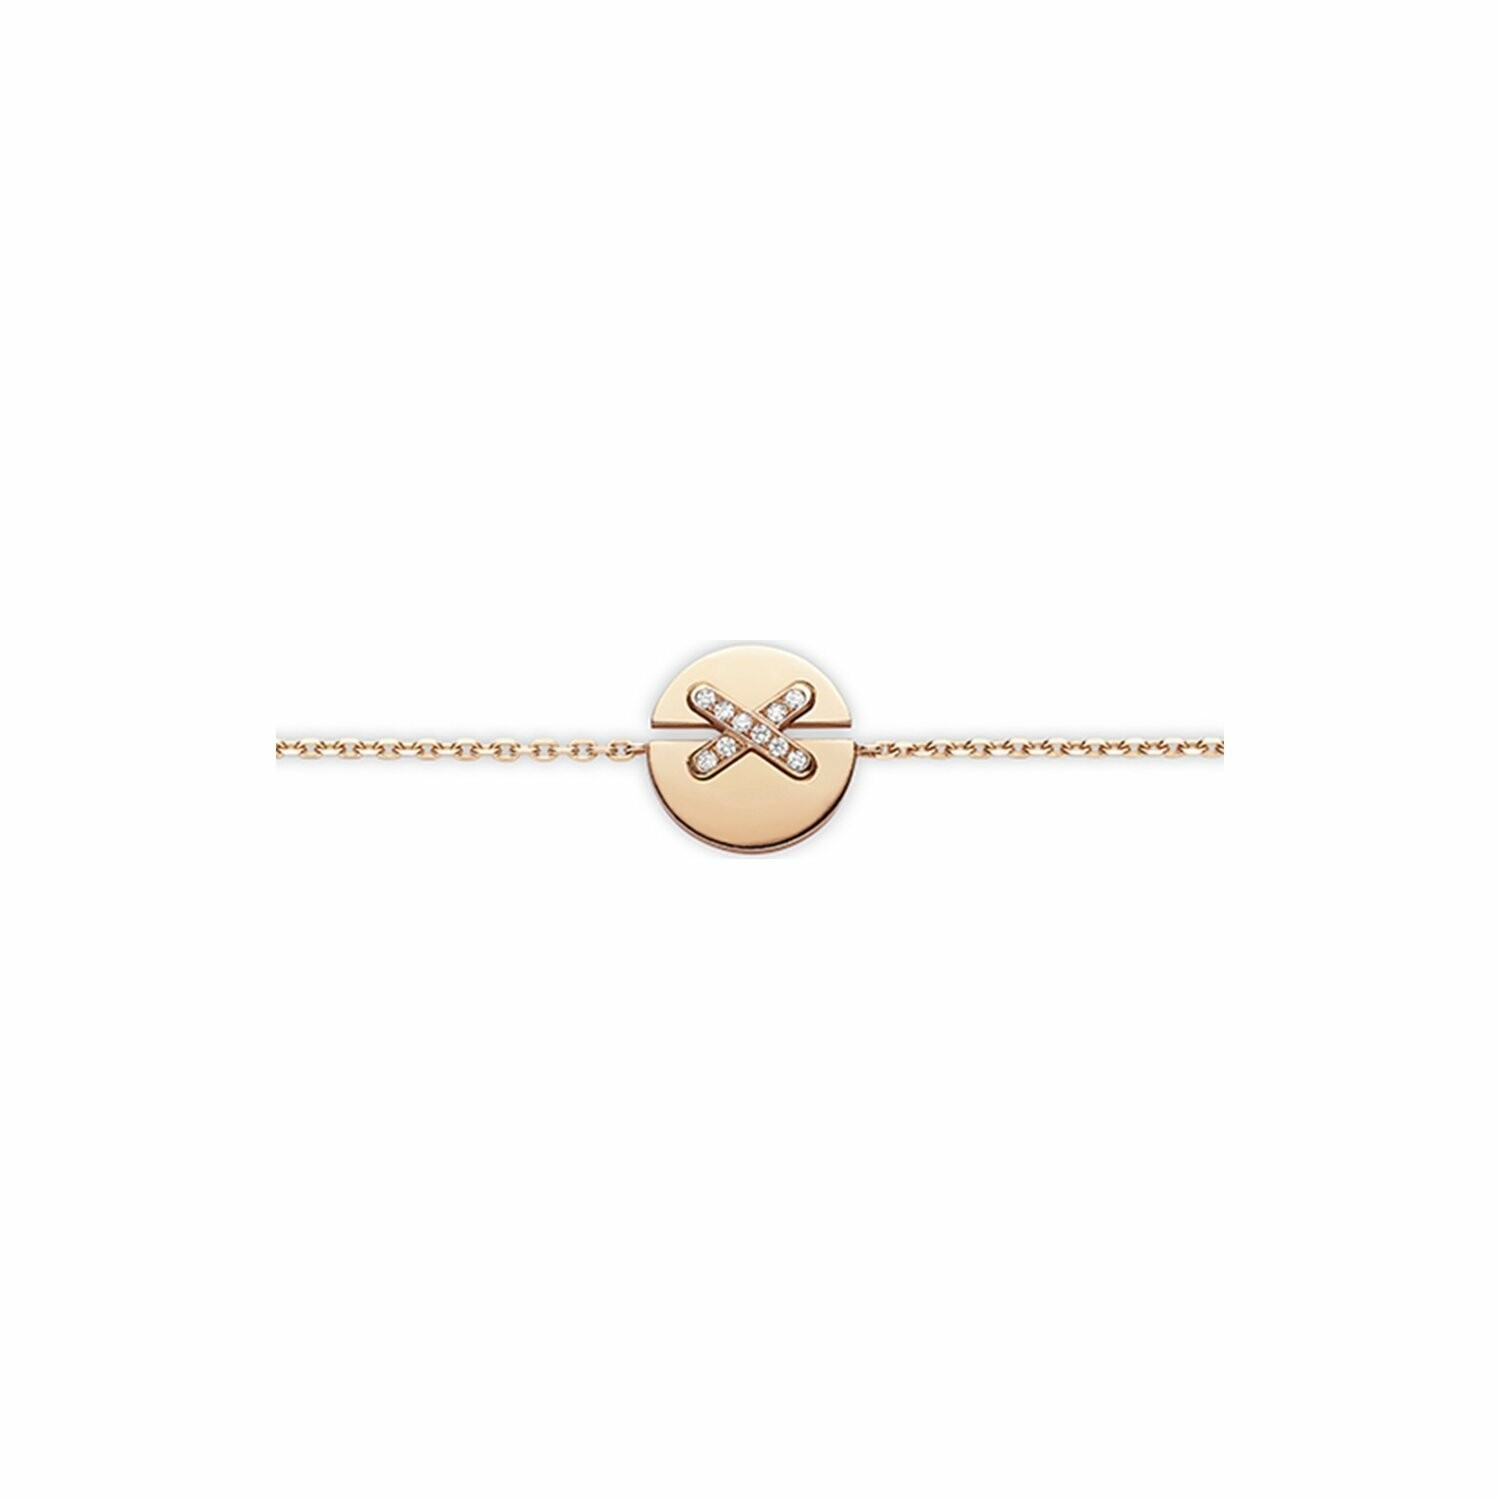 Bracelet Chaumet Jeux de Liens Harmony petit modèle en or rose et diamants vue 1